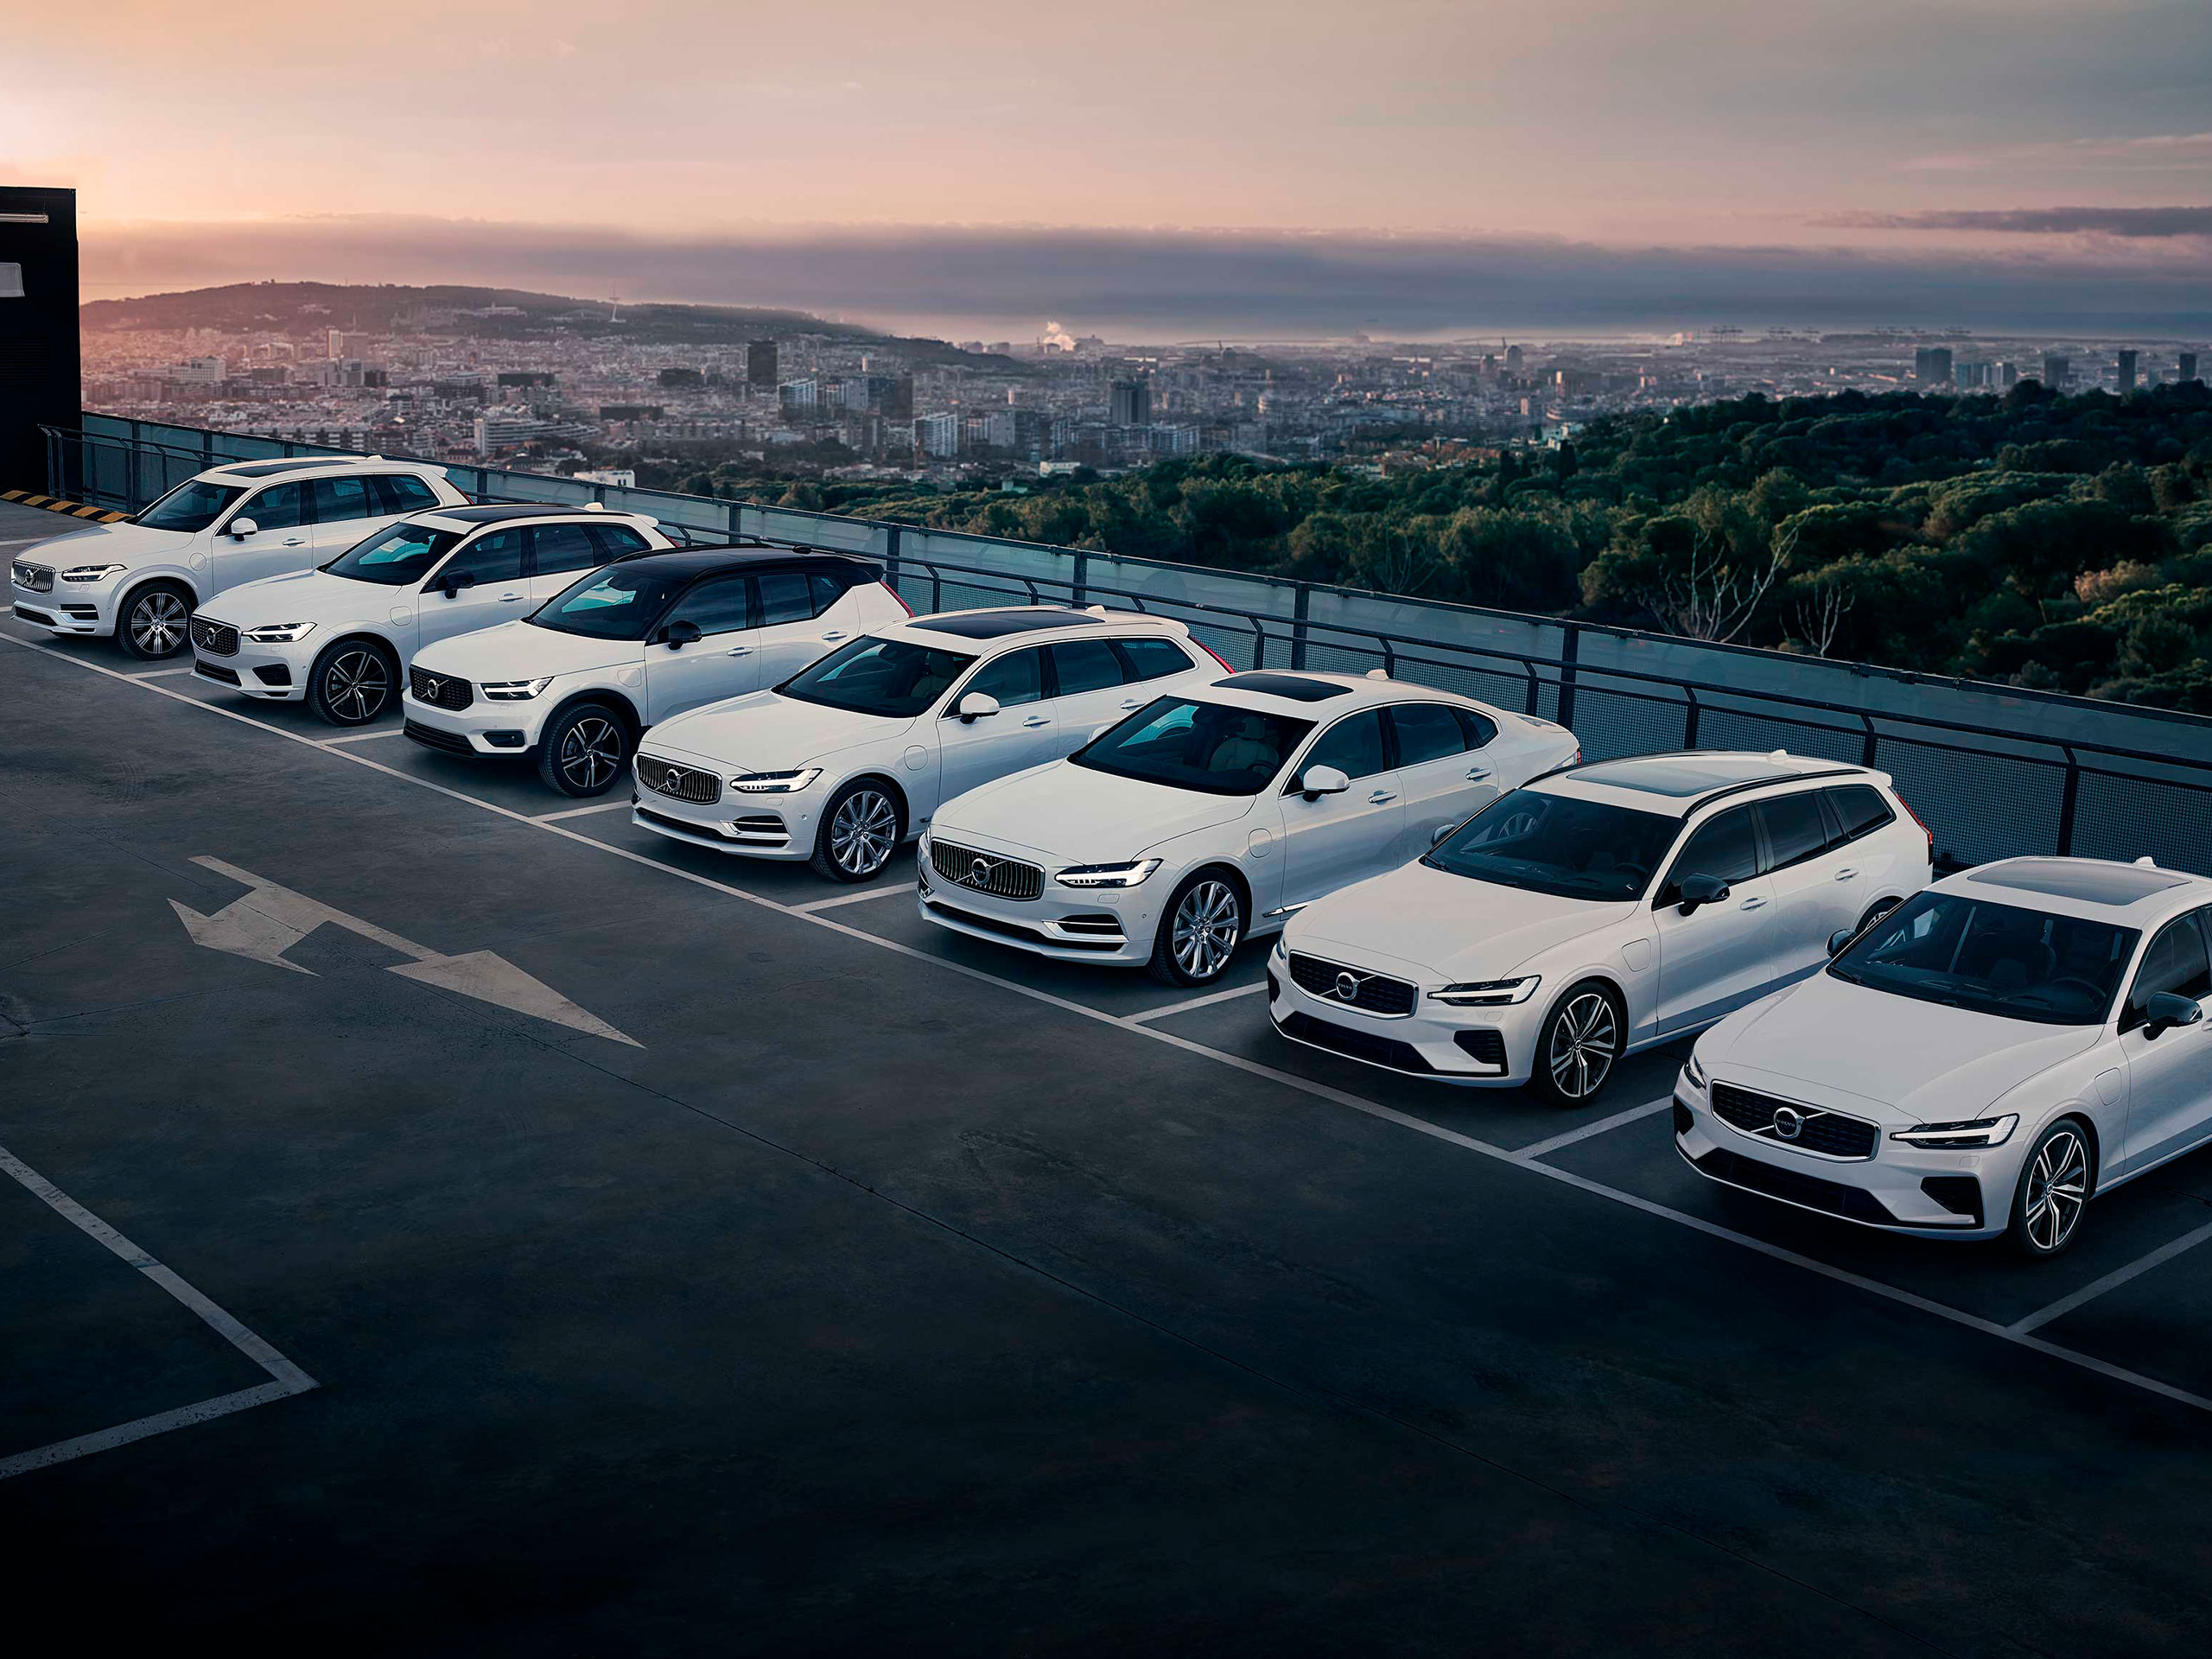 Forskellige Volvo modeller parkeret i en parkeringsplads